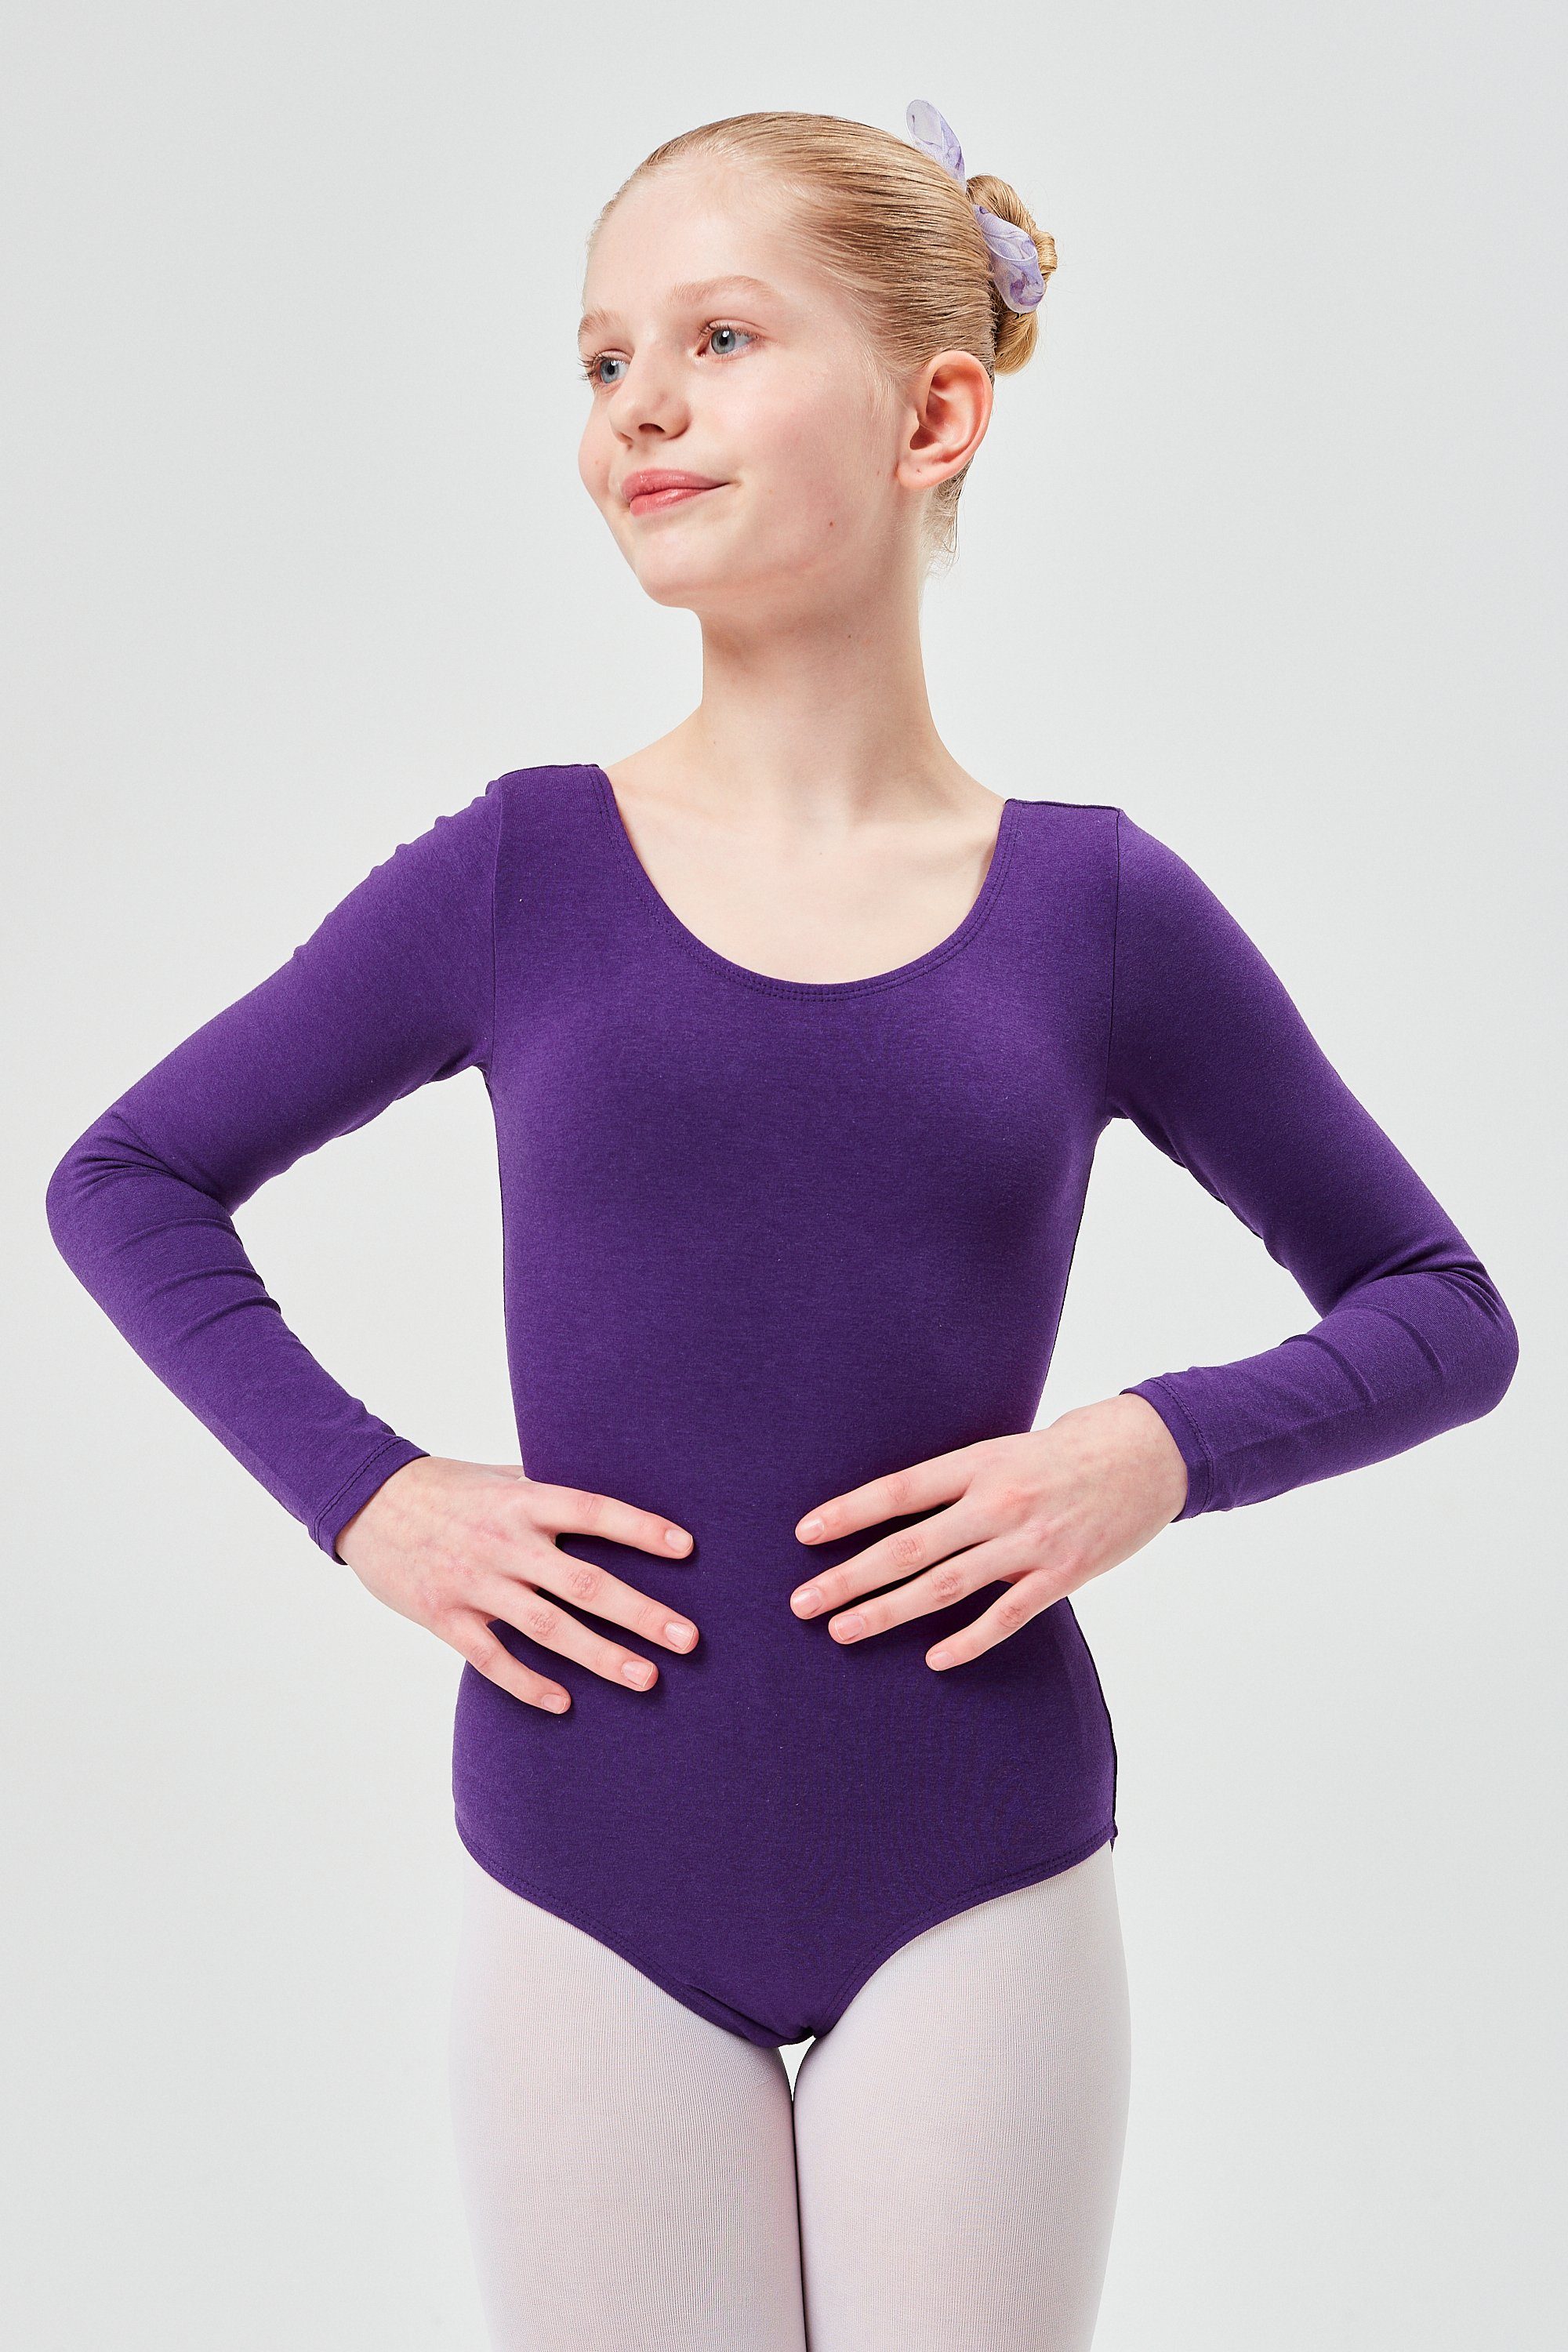 tanzmuster Body Ballettbody Lilly aus weichem Baumwollmischgewebe Langarm Trikot fürs Kinder Ballett lila